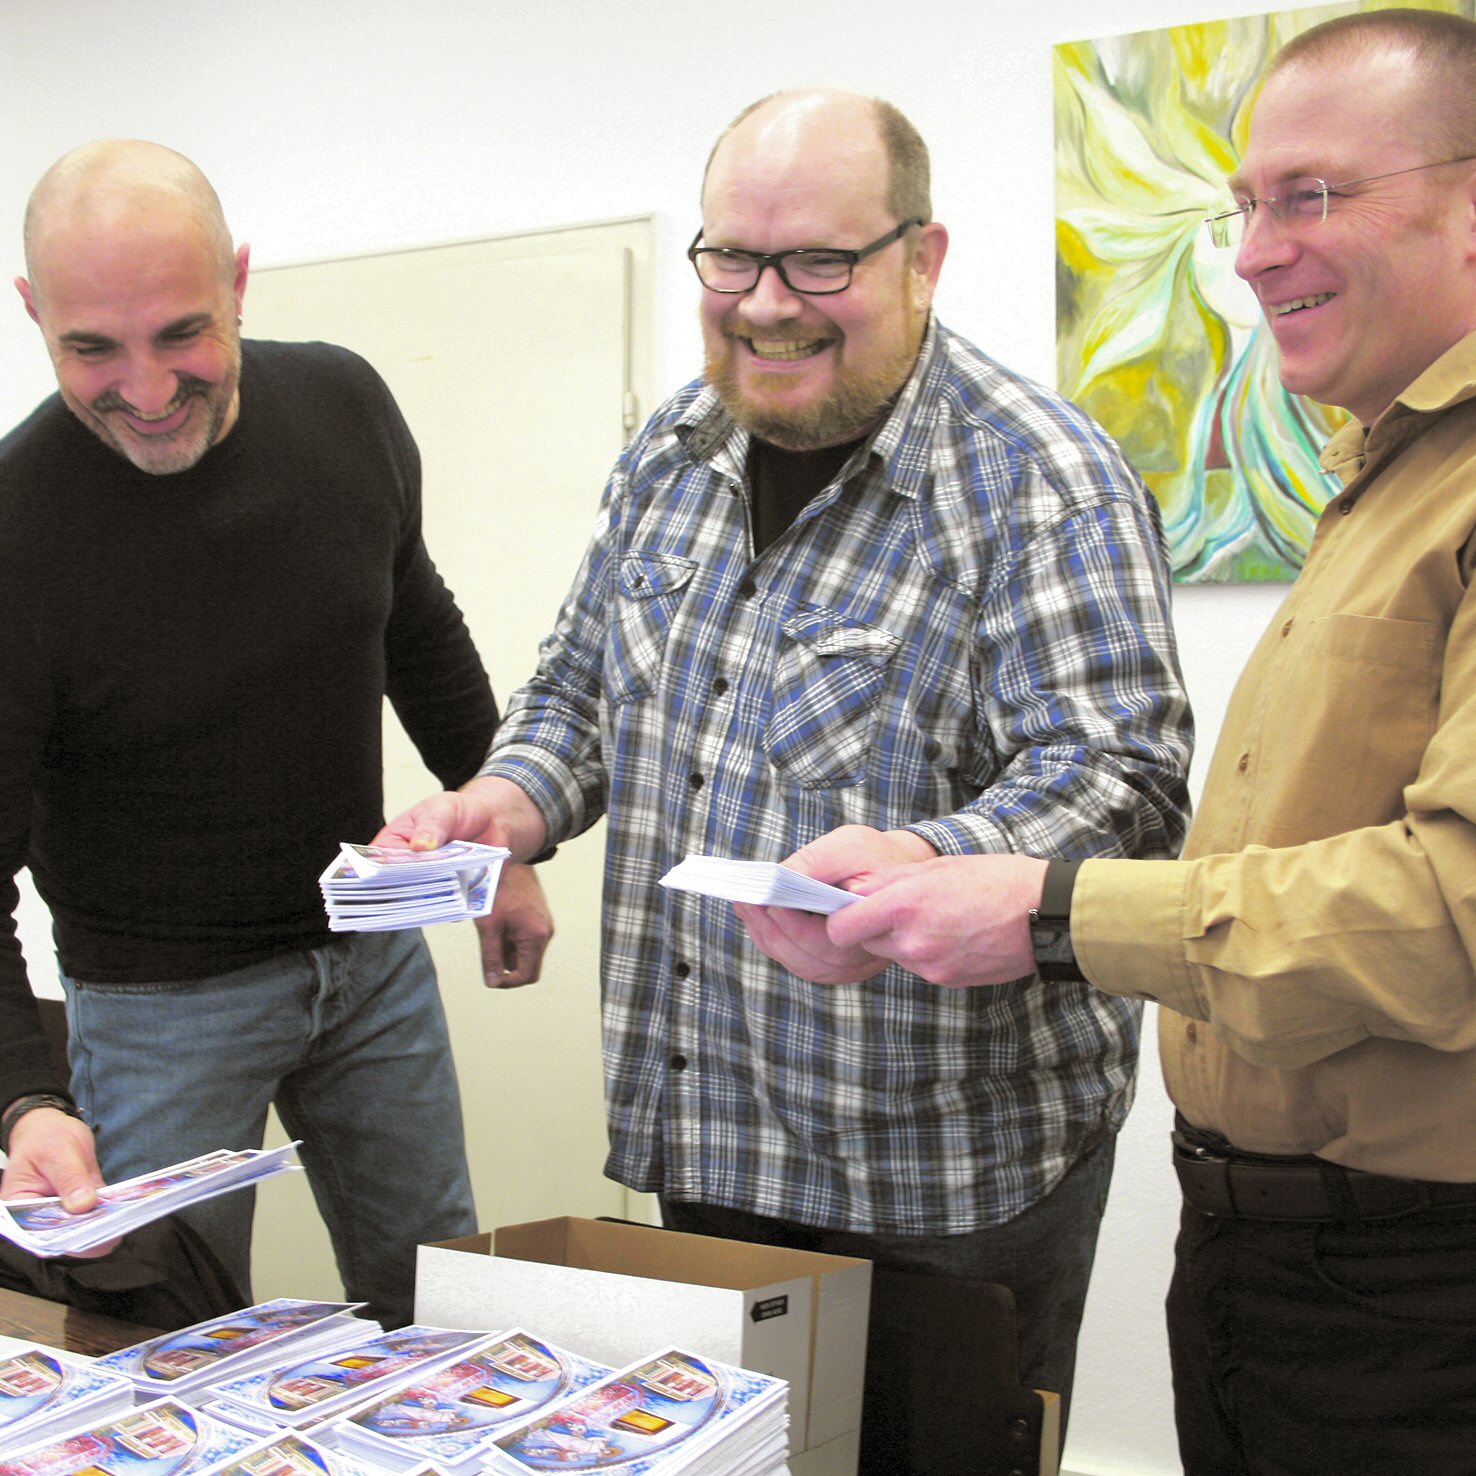 Sie wollen für ihren Glauben tätig werden: (von links) Vincenzo Linardi, Hayno Bohatschek und Nico Göth, hier beim Auspacken ihrer Einladungskarten zur Weihe. Foto: Anja Weiffen